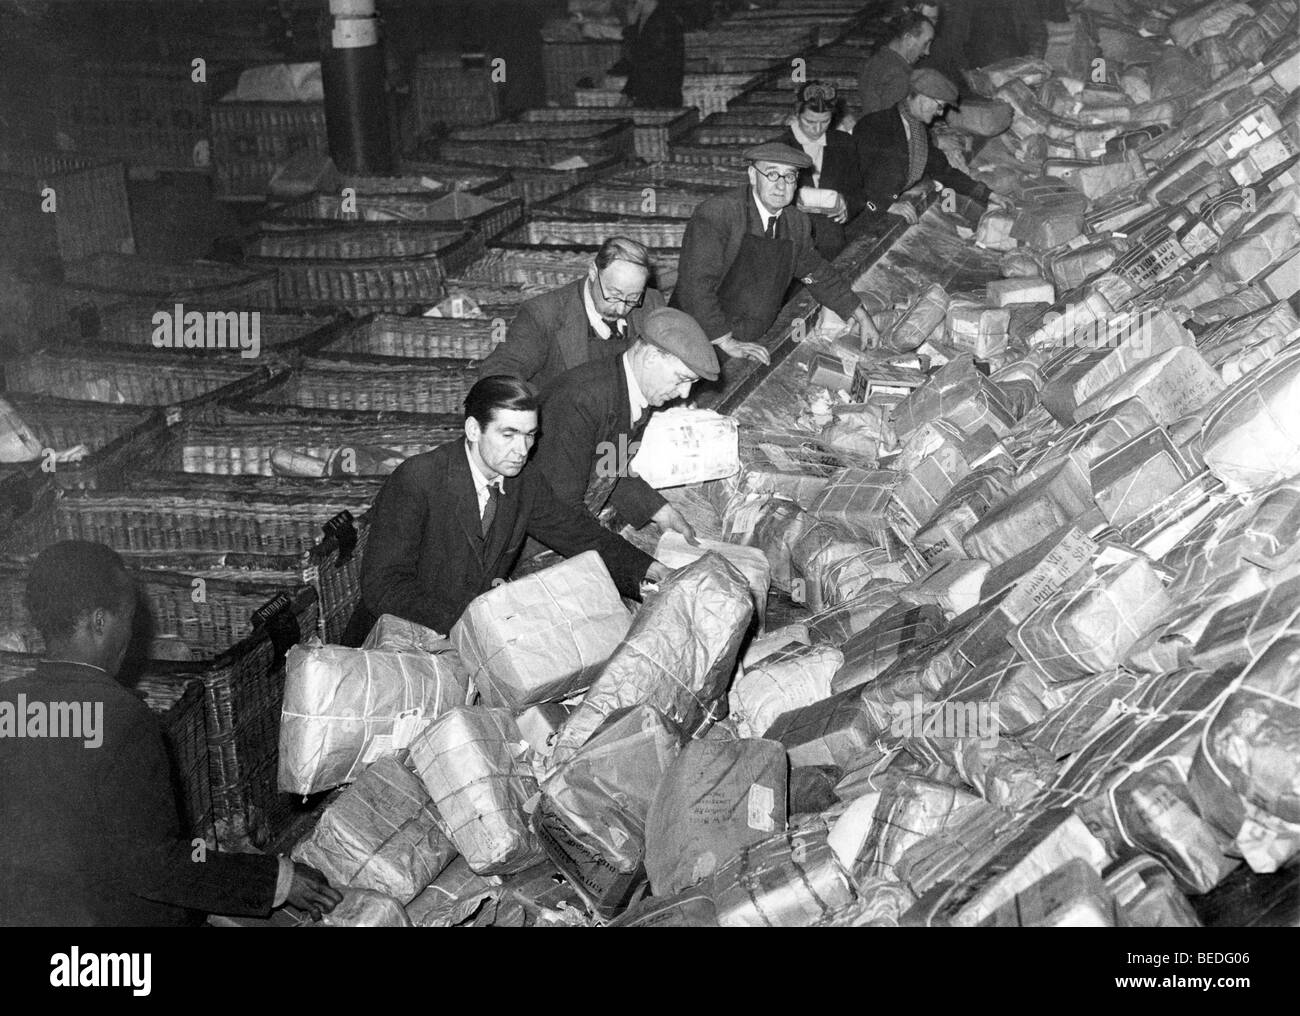 Photographie historique, travailleurs et travailleuses des postes le tri des paquets, autour de 1925 Banque D'Images